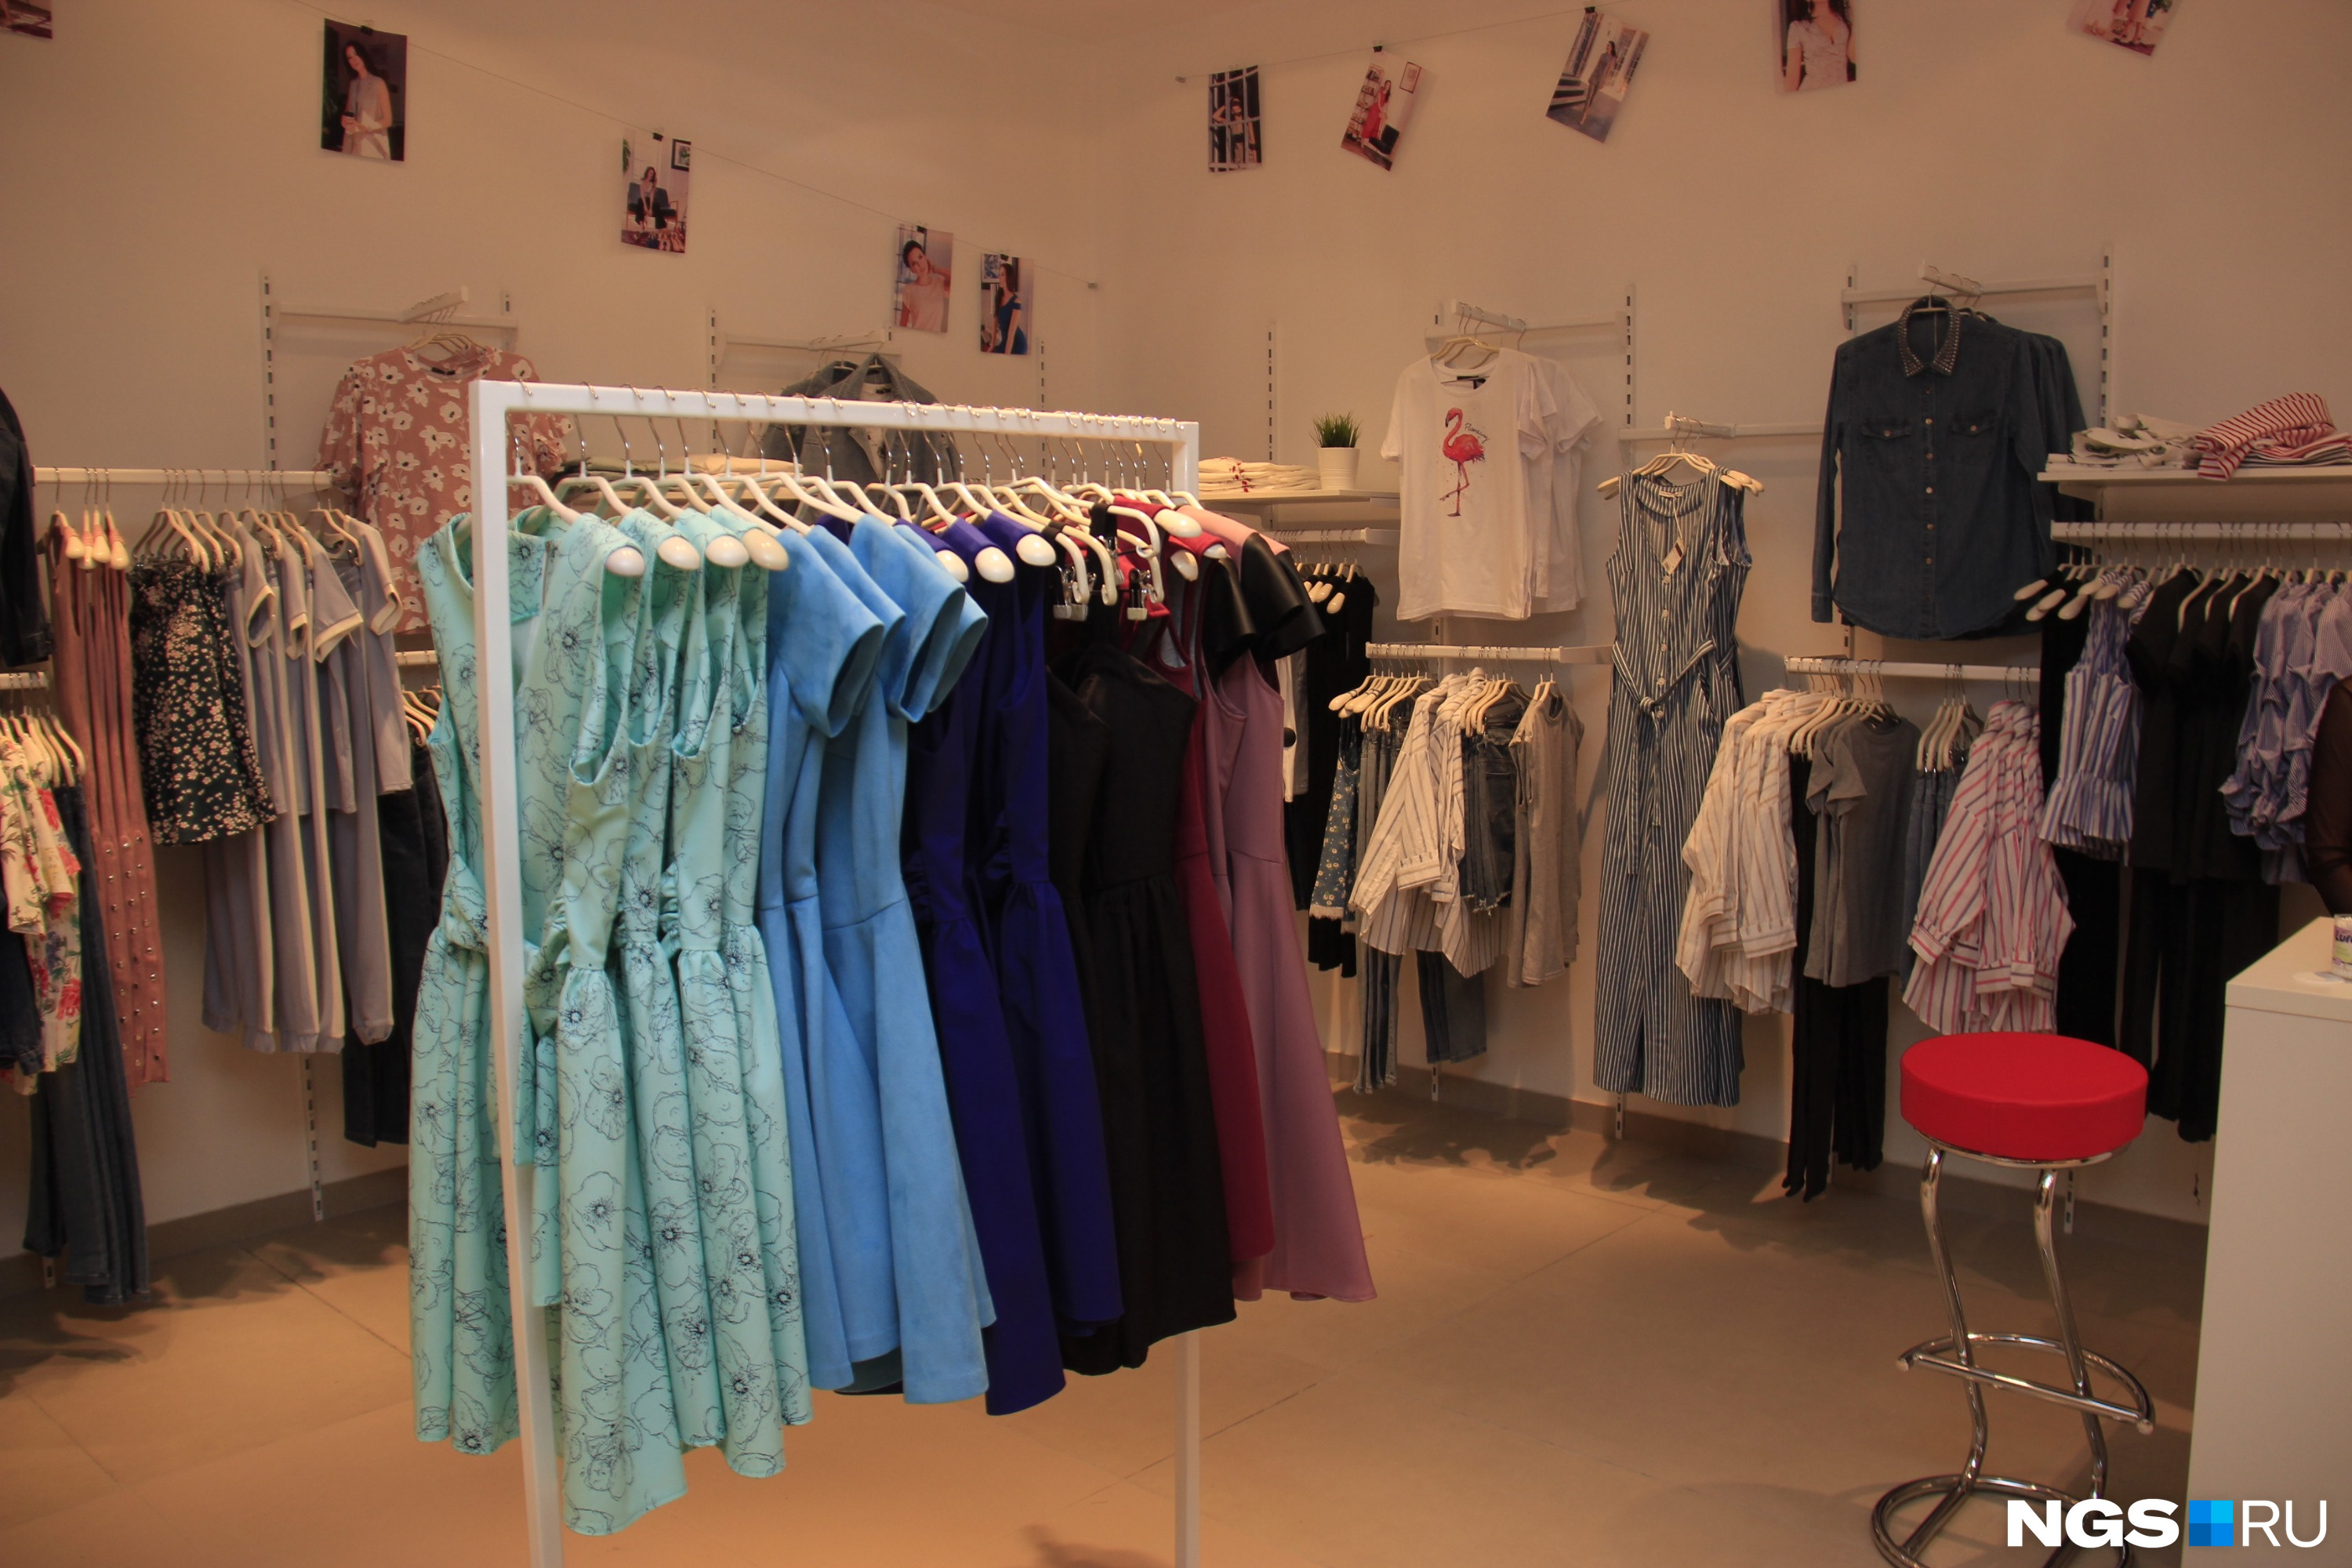 Платья в магазине «Кира Пластинина» стоят в среднем 4–5 тысяч рублей